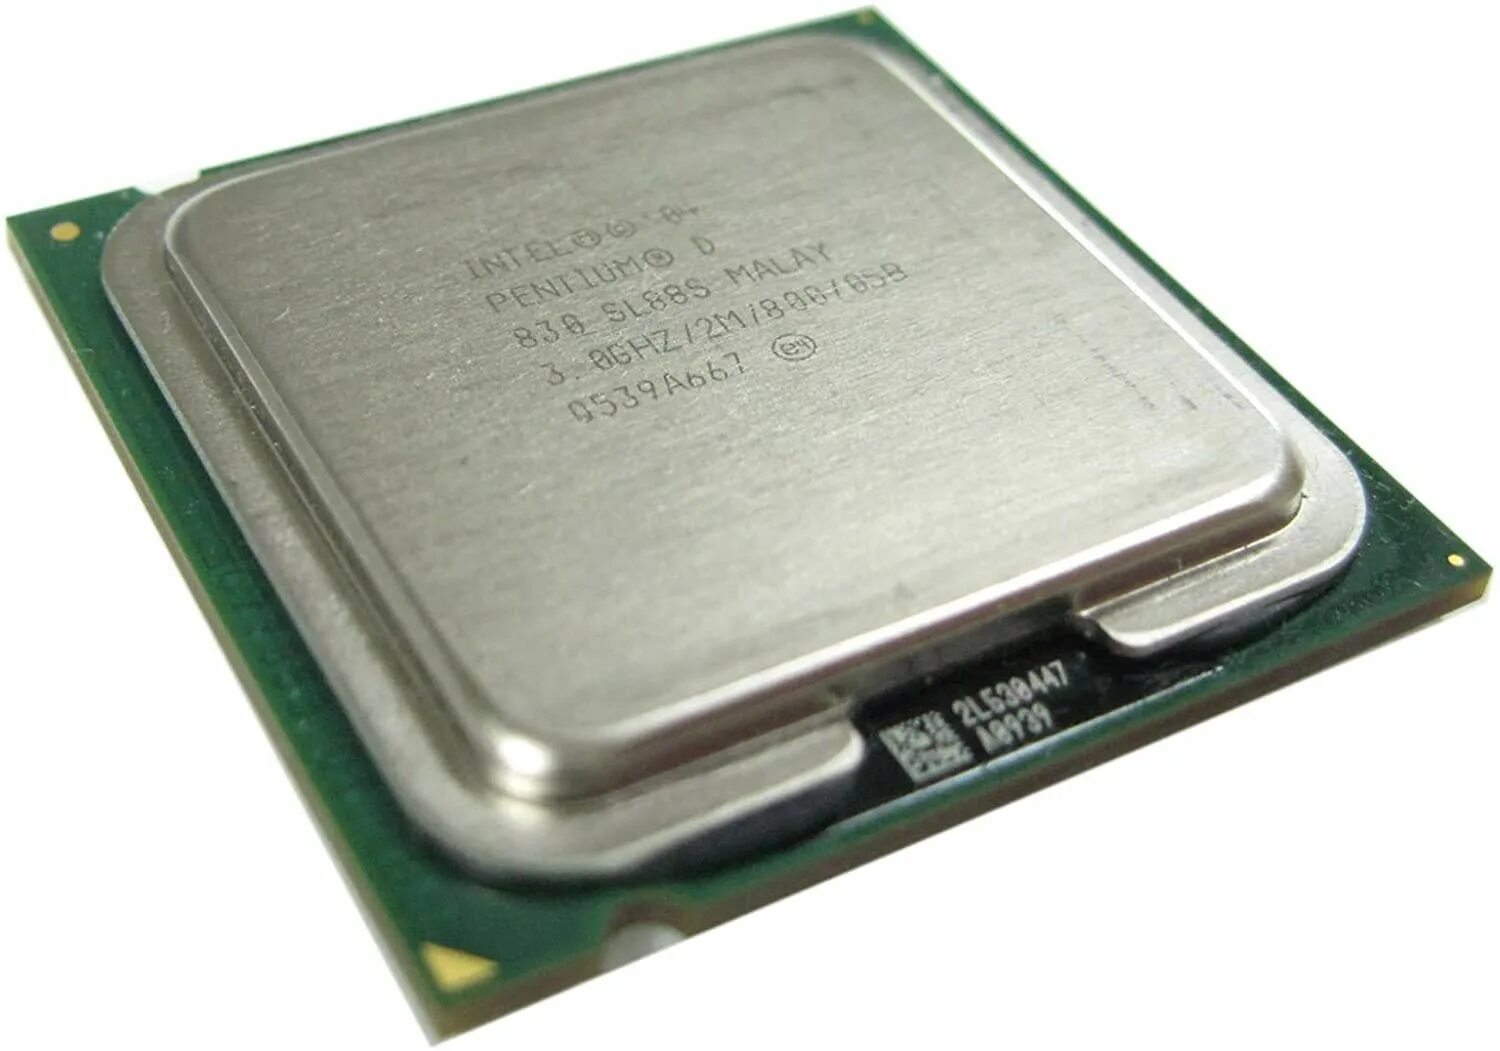 Процессор Intel Pentium d 830. Процессор Intel Core 2 Duo mobile t7300 Merom. Процессор Intel Xeon e5-2680 Sandy Bridge-Ep. Процессор: Intel Pentium d 830 @ 3.00GHZ; AMD Athlon 64 x2 Dual Core 3600+. Pentium r 3.00 ghz